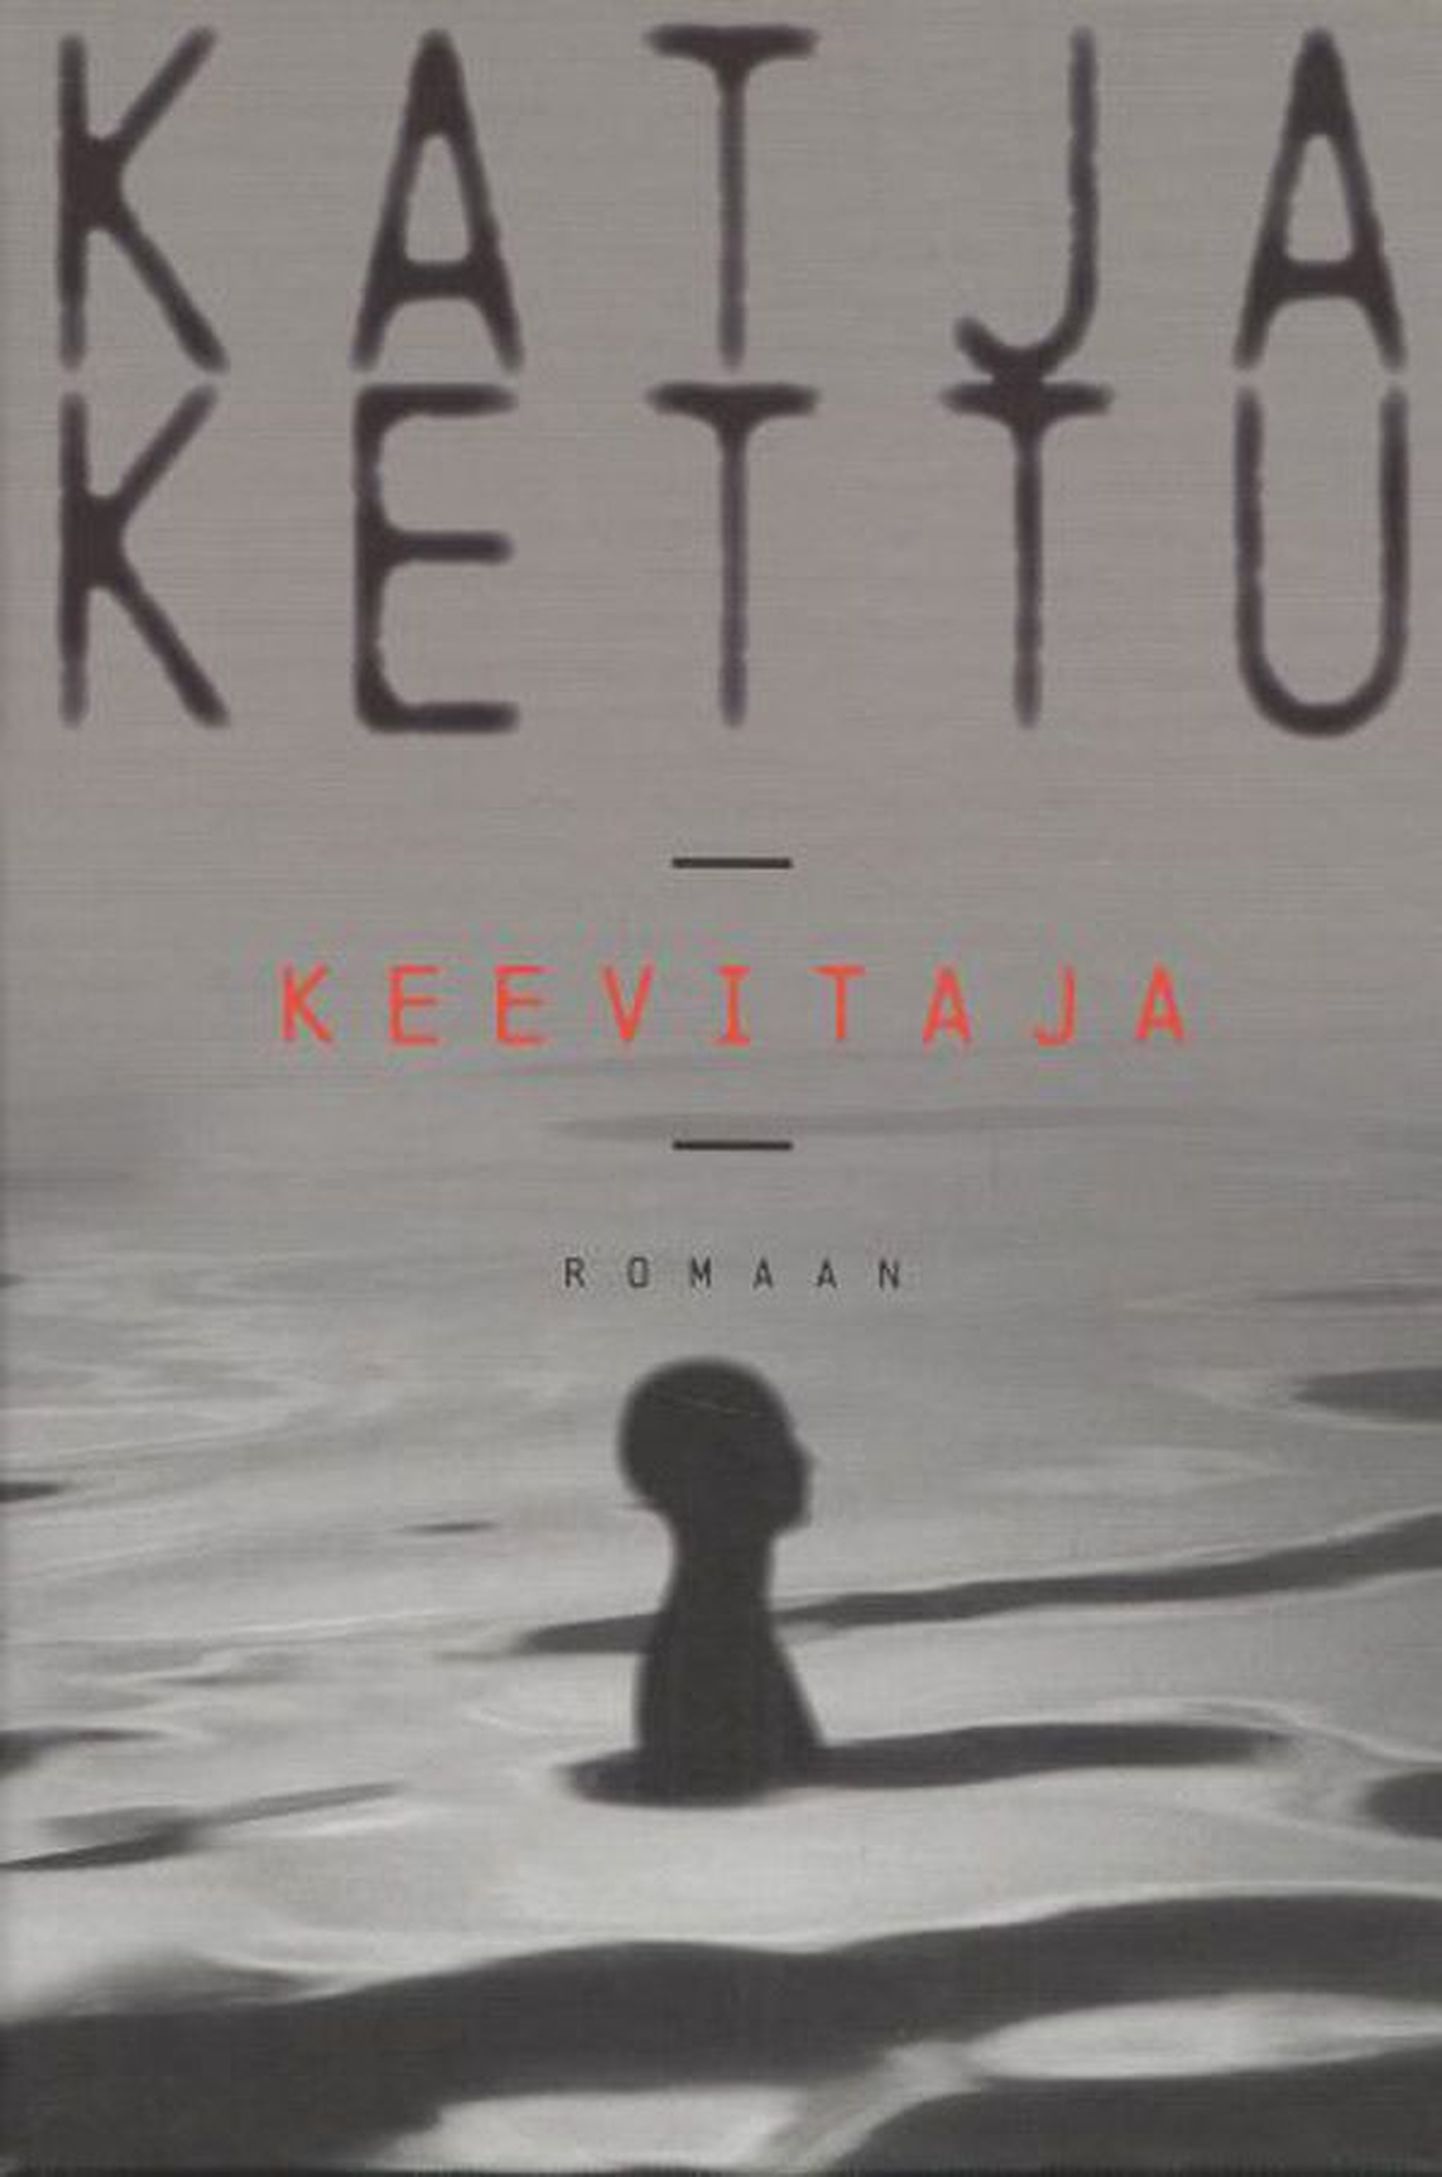 Raamat 
Katja Kettu 
«Keevitaja»
Koolibri, 2011
220 lk  
Tõlkija 
Kadri Jaanits